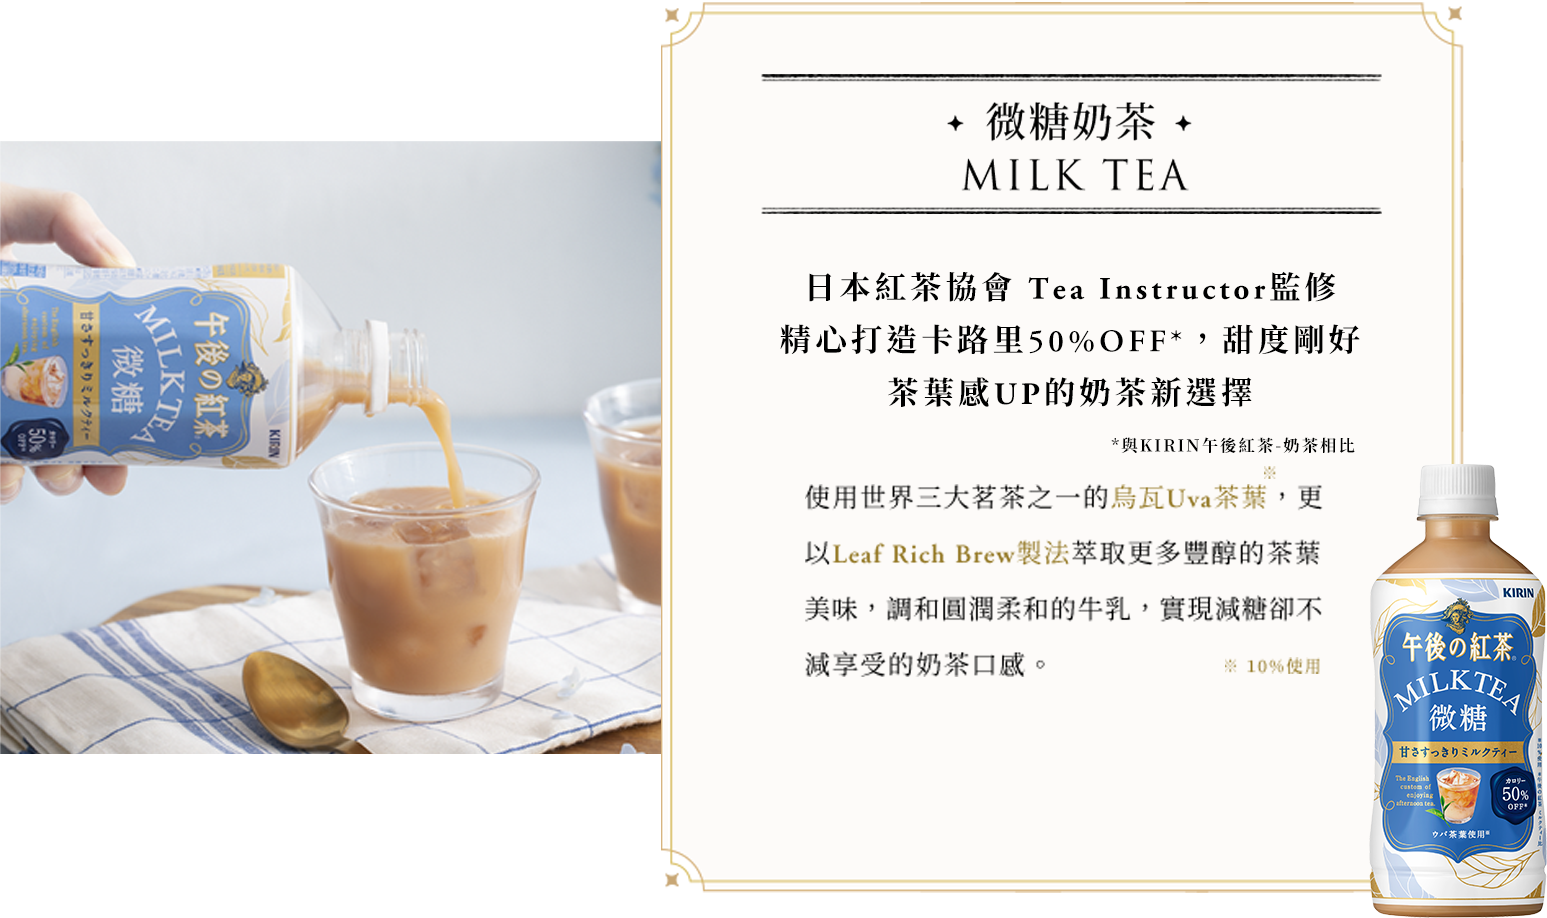 微糖奶茶 THE MEISTER'S MILK TEA 使用世界三大茗茶之一的烏瓦Uva茶葉，更以Leaf Rich Brew製法萃取更多豐醇的茶葉美味，調和圓潤柔和的牛乳，實現減糖卻不減享受的奶茶口感。